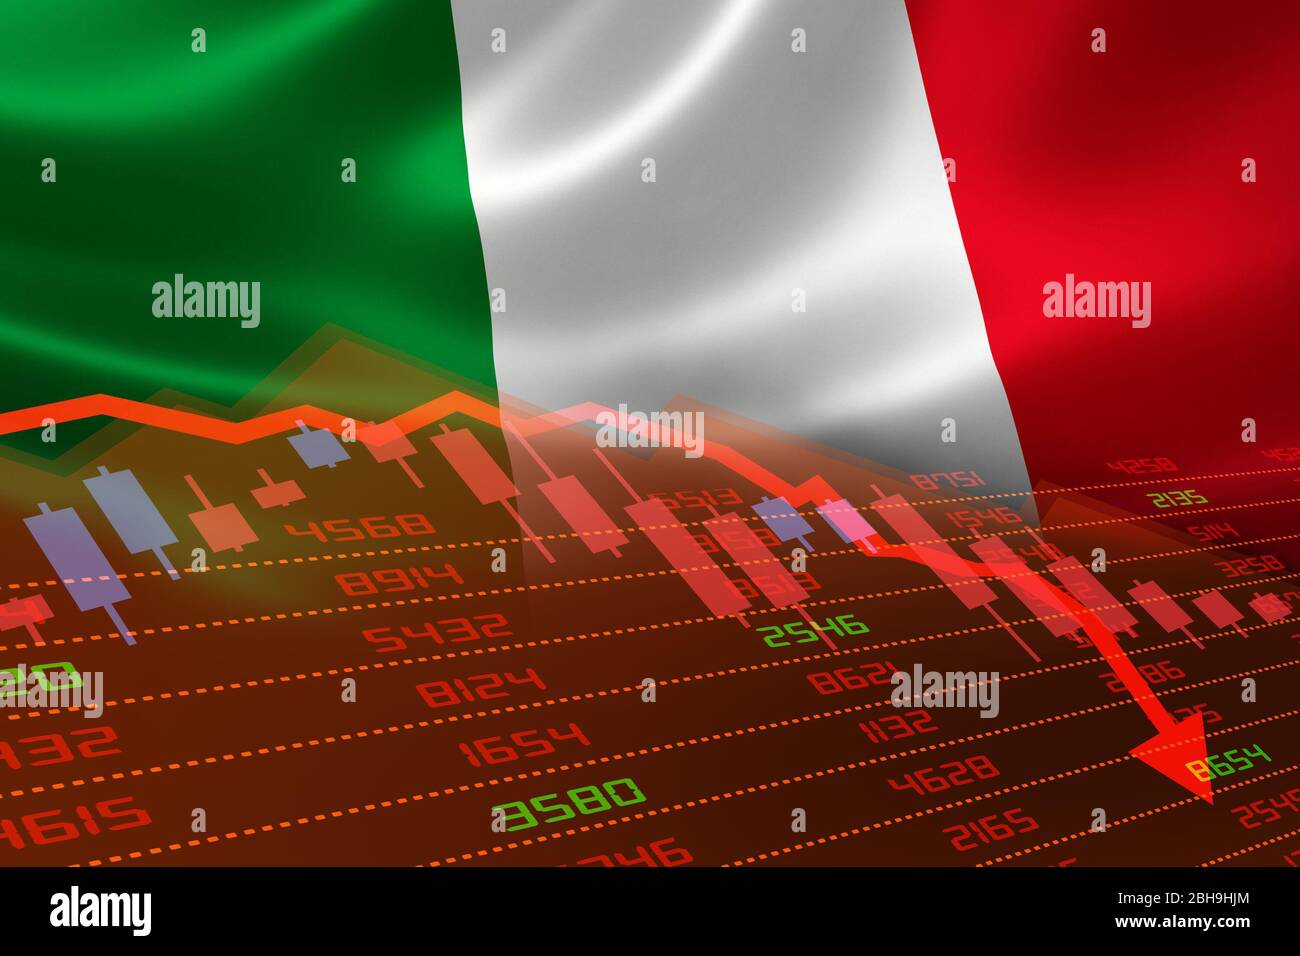 Der wirtschaftliche Abschwung in Italien, an der Börse zeigt sich der Aktienchart nach unten und im roten negativen Bereich. Geschäfts- und Finanzgeldmarktkrise Stockfoto